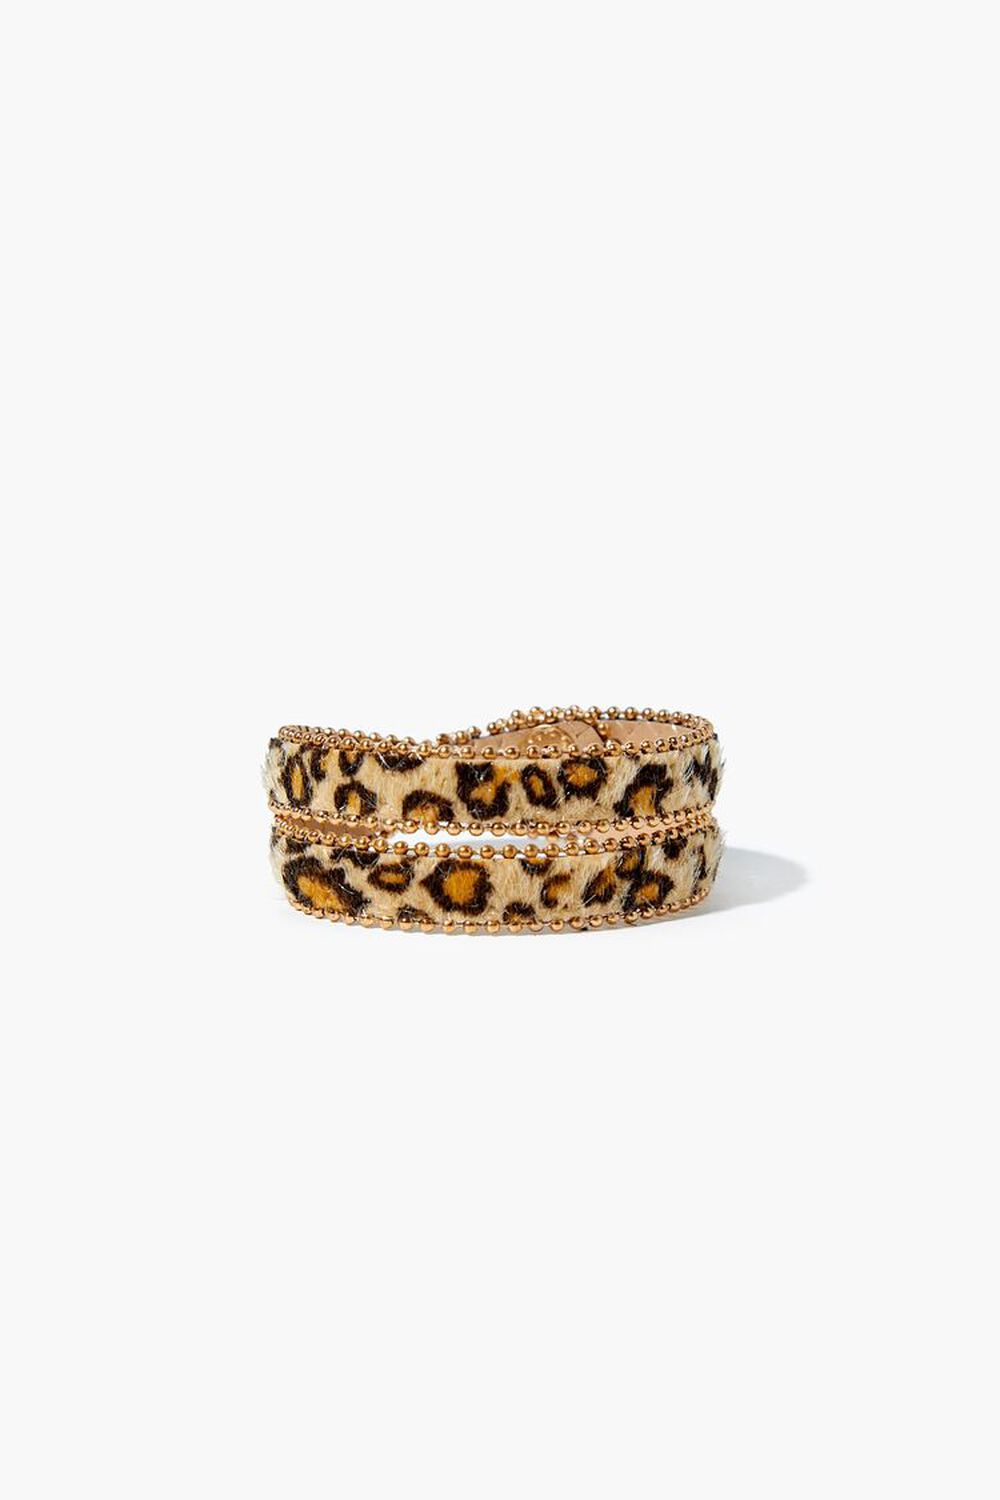 Leopard Print Wrap Bracelet, image 1